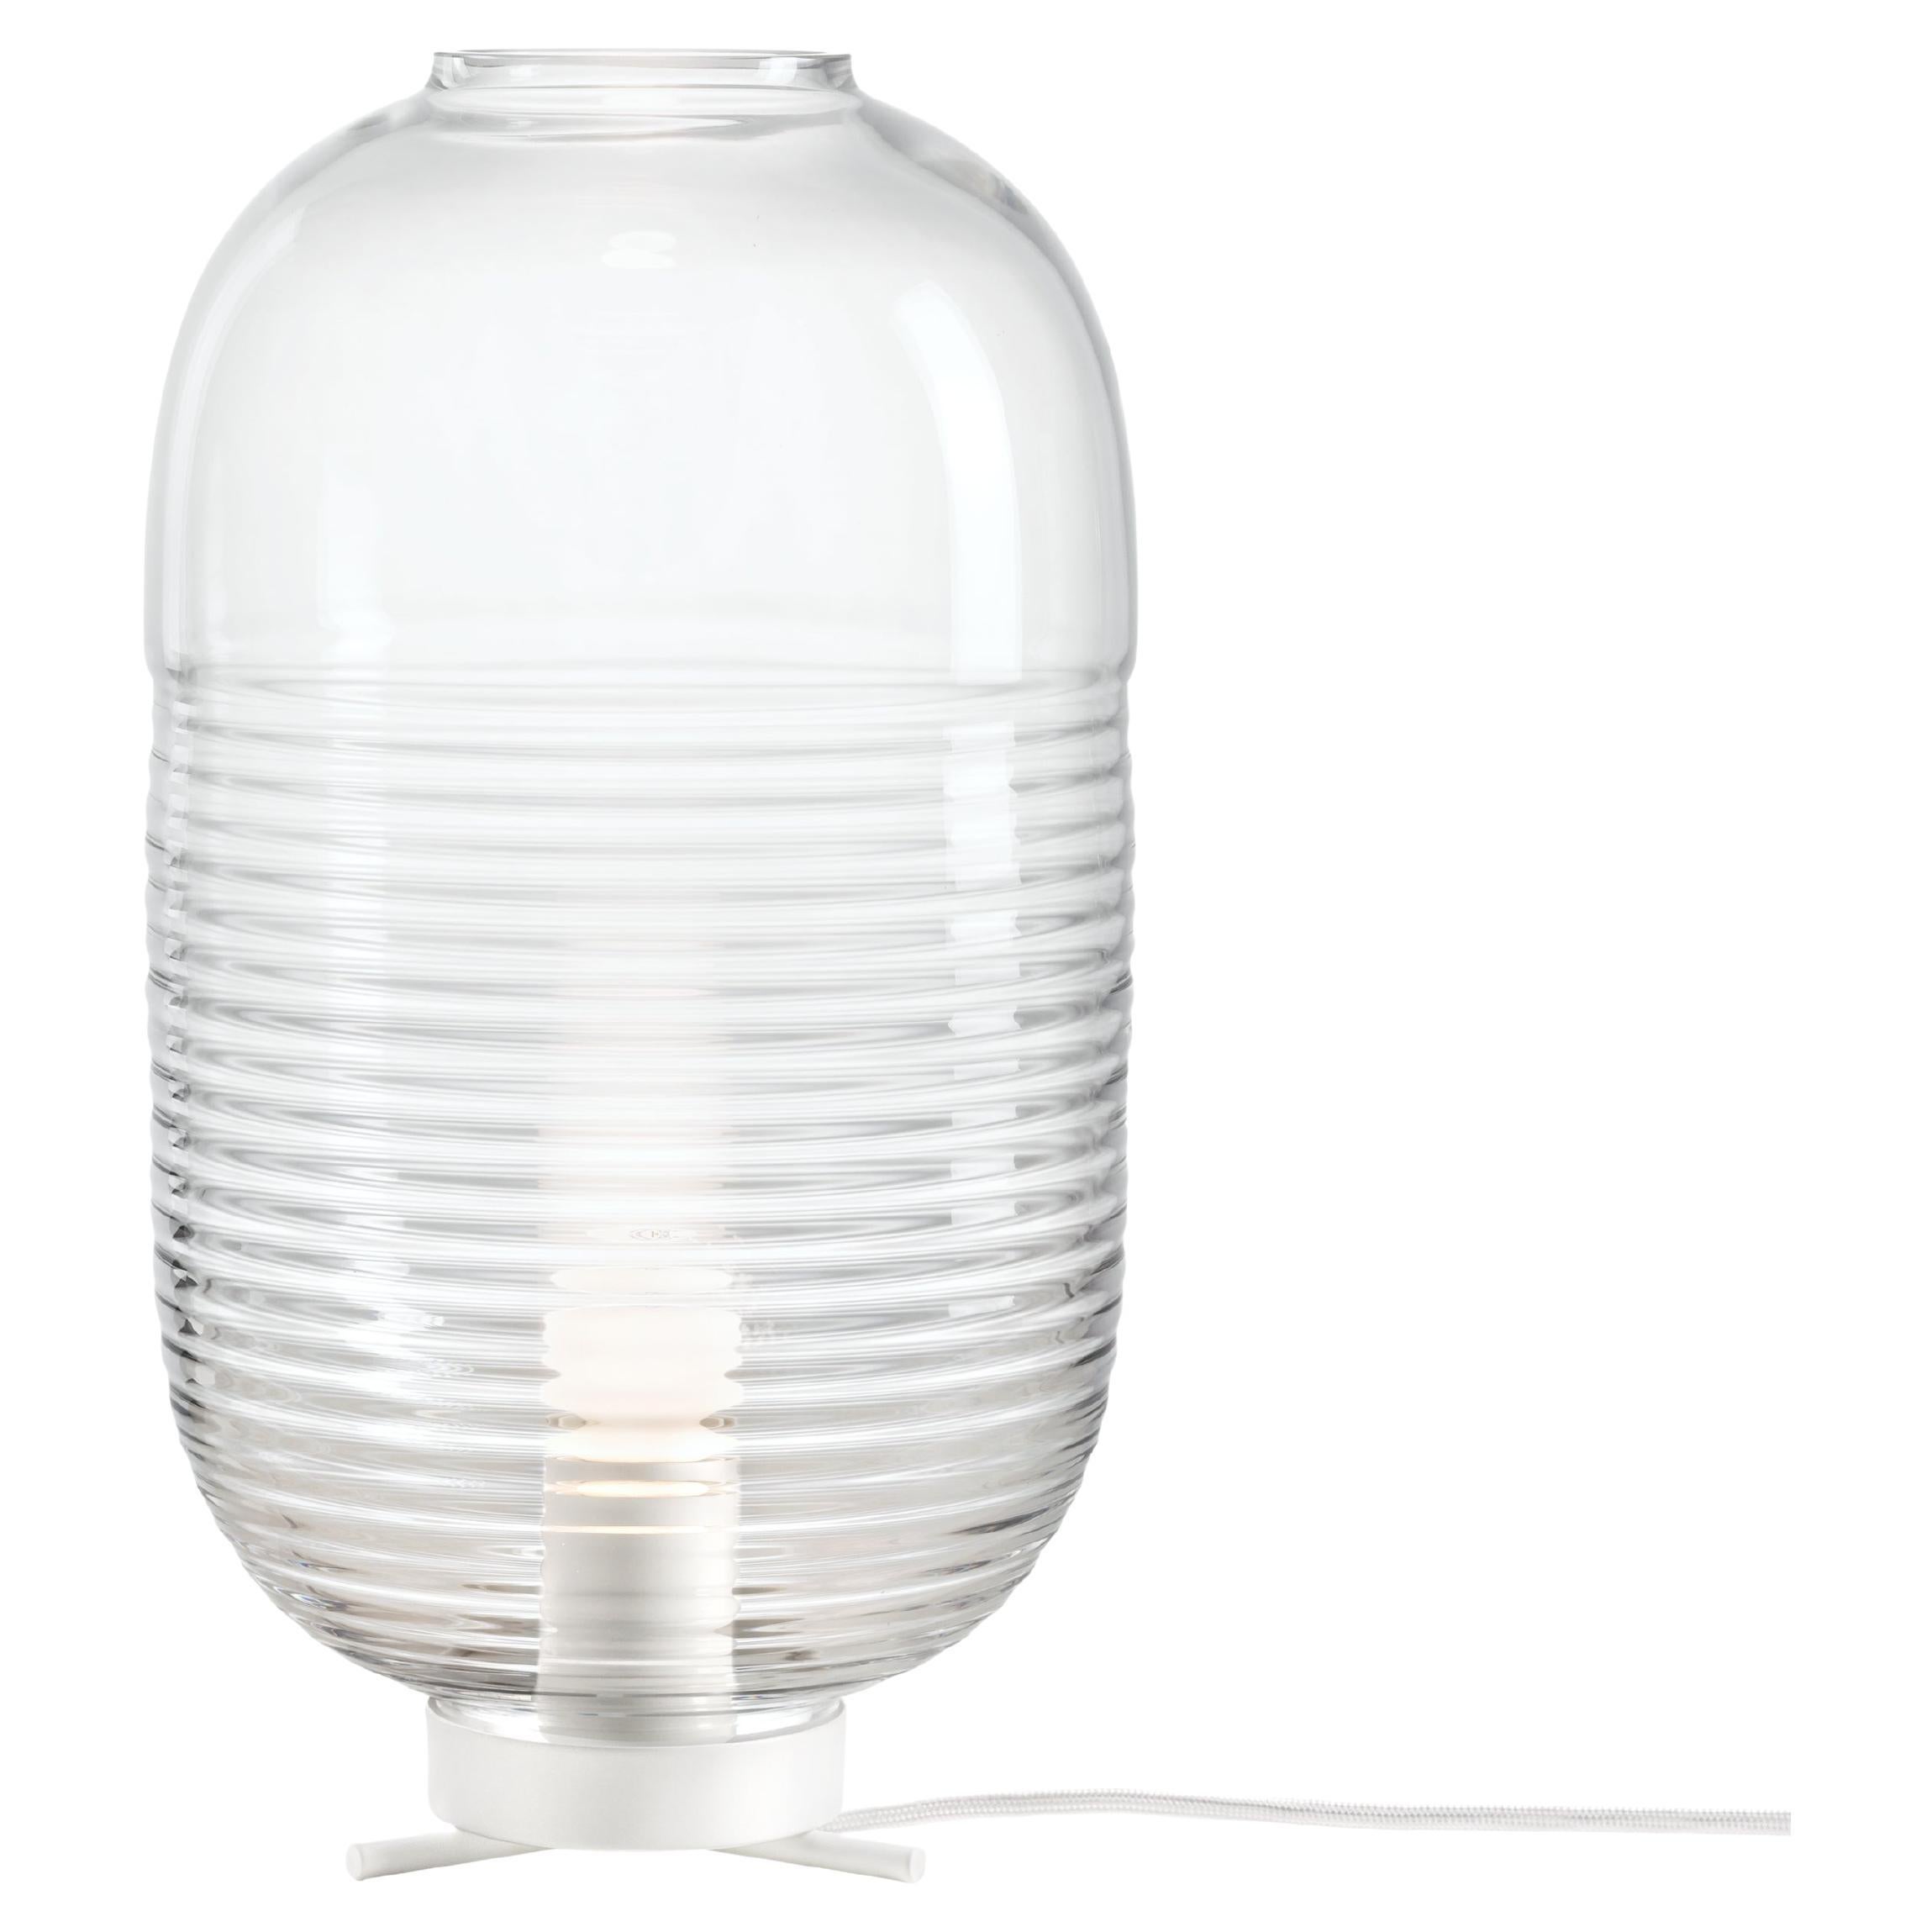 Lampe de table LANTERN conçue par Jan Plecháč & Henry Wielgus pour BOMMA  **Produit discontinué, n'est plus produit.**

La lampe de table Lantern, qui associe une forme ancienne au cristal, donne à cette lanterne un aspect éphémère. Presque